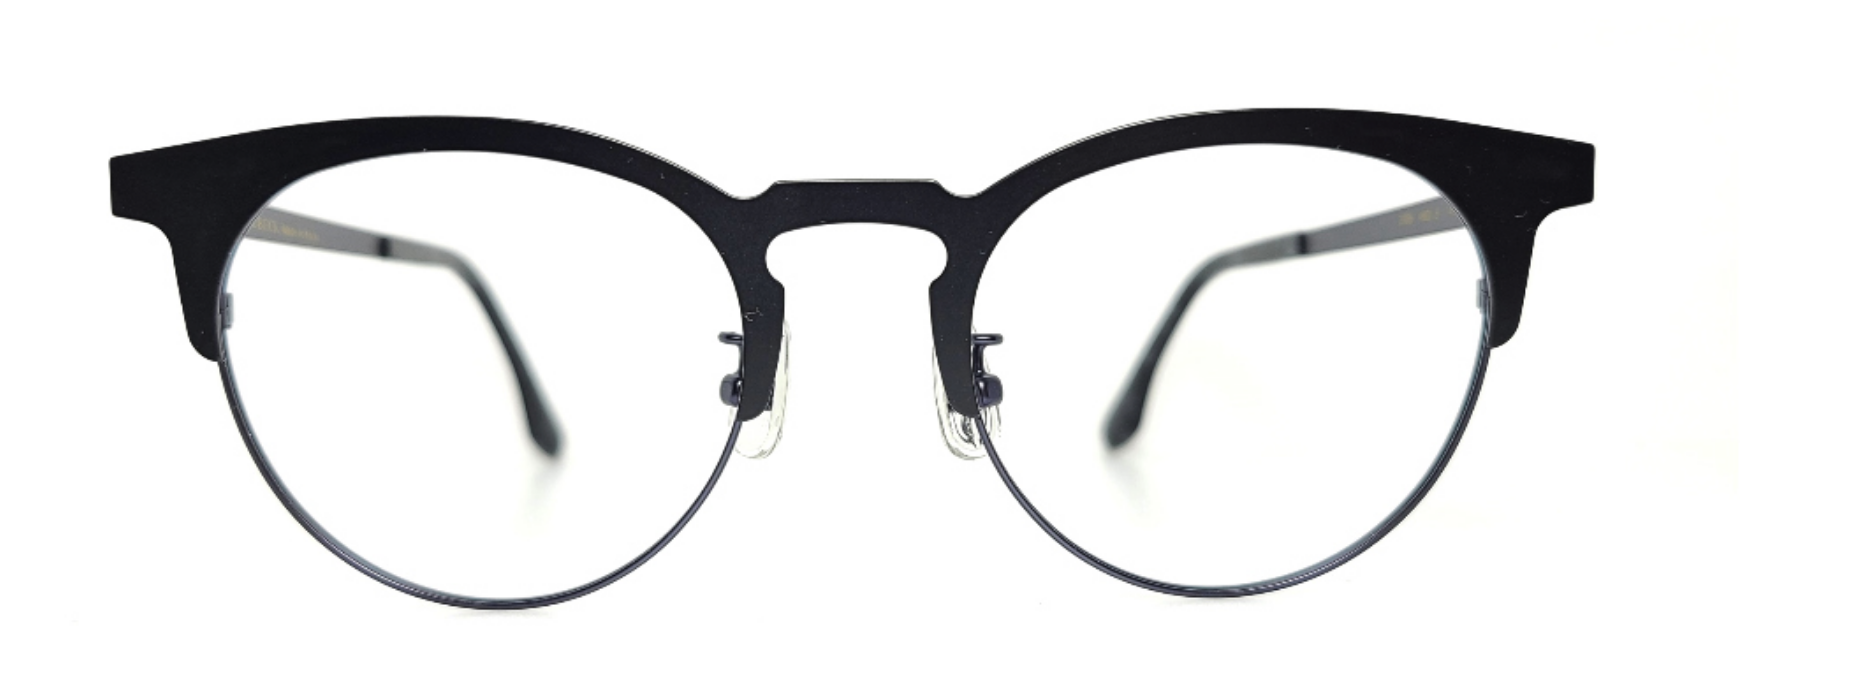 Korean glasses frames